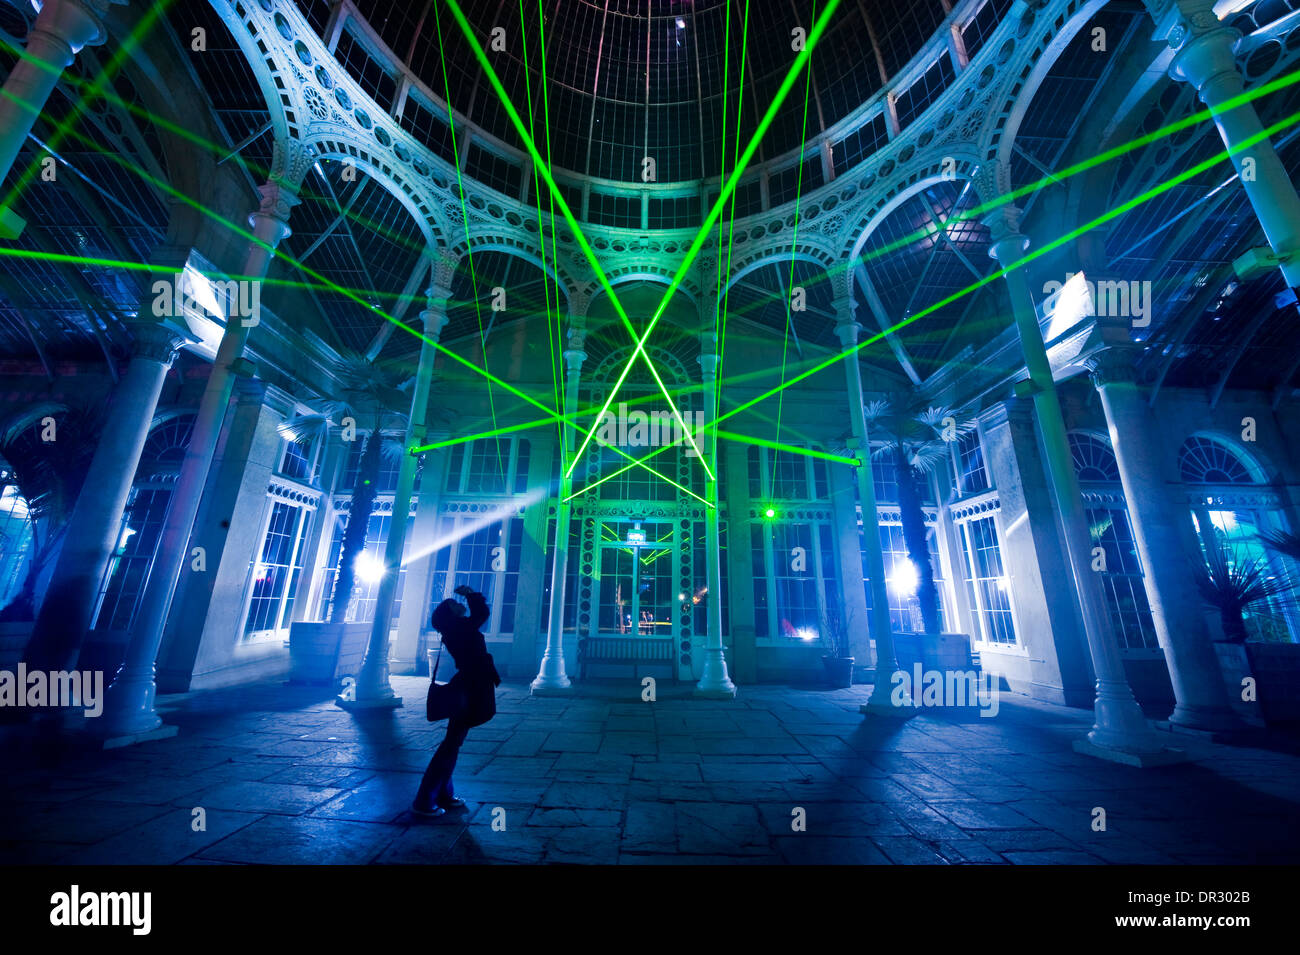 Eine Person nimmt ein Bild von Lasern abprallen reflektierten Flächen am Syon Park House in London Stockfoto